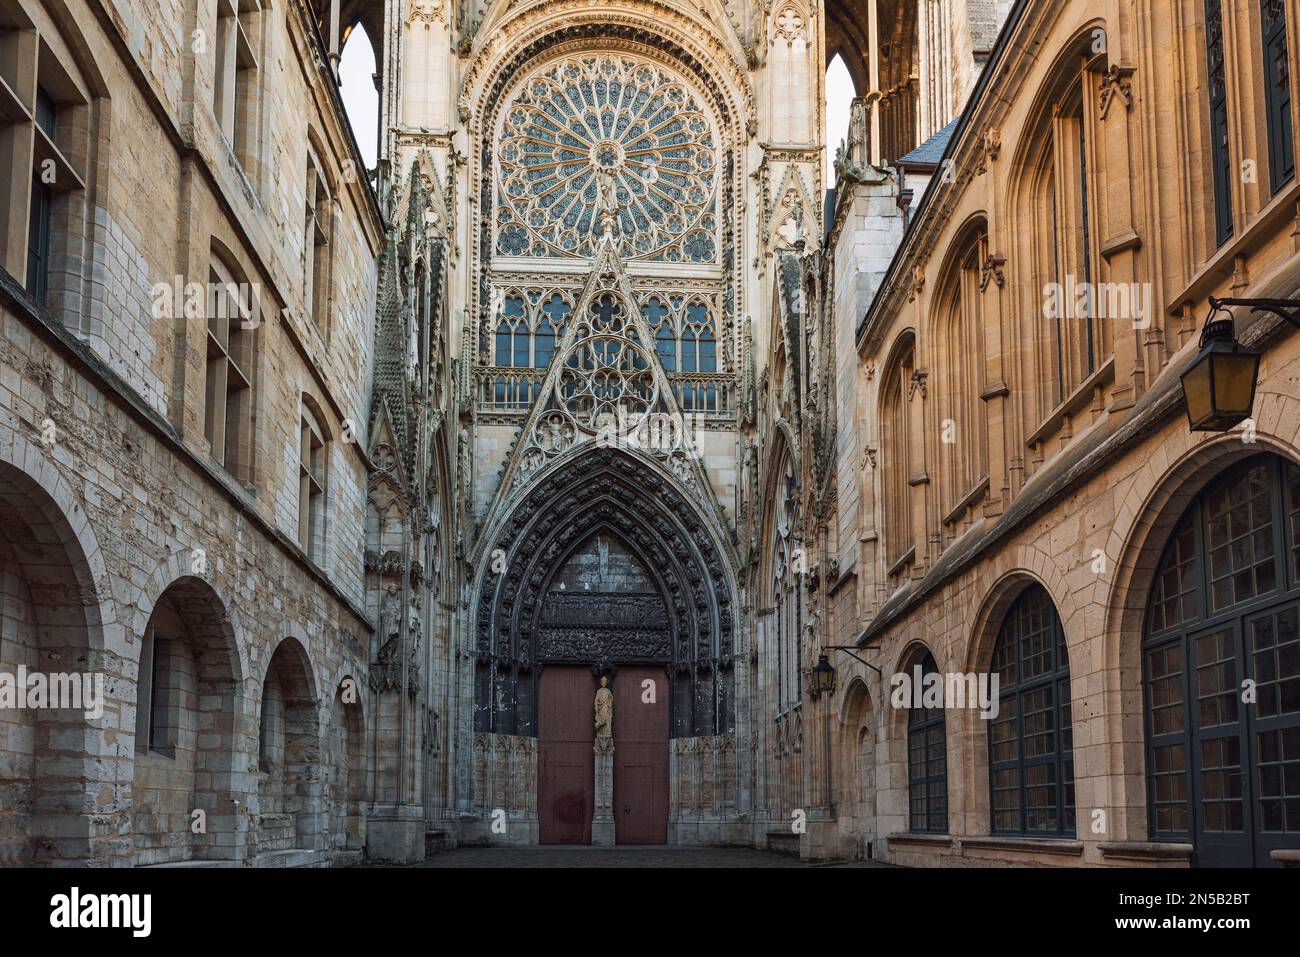 Facciata della famosa cattedrale gotica di Rouen nella regione della Normandia, Francia. La cattedrale è nella tradizione architettonica gotica Foto Stock